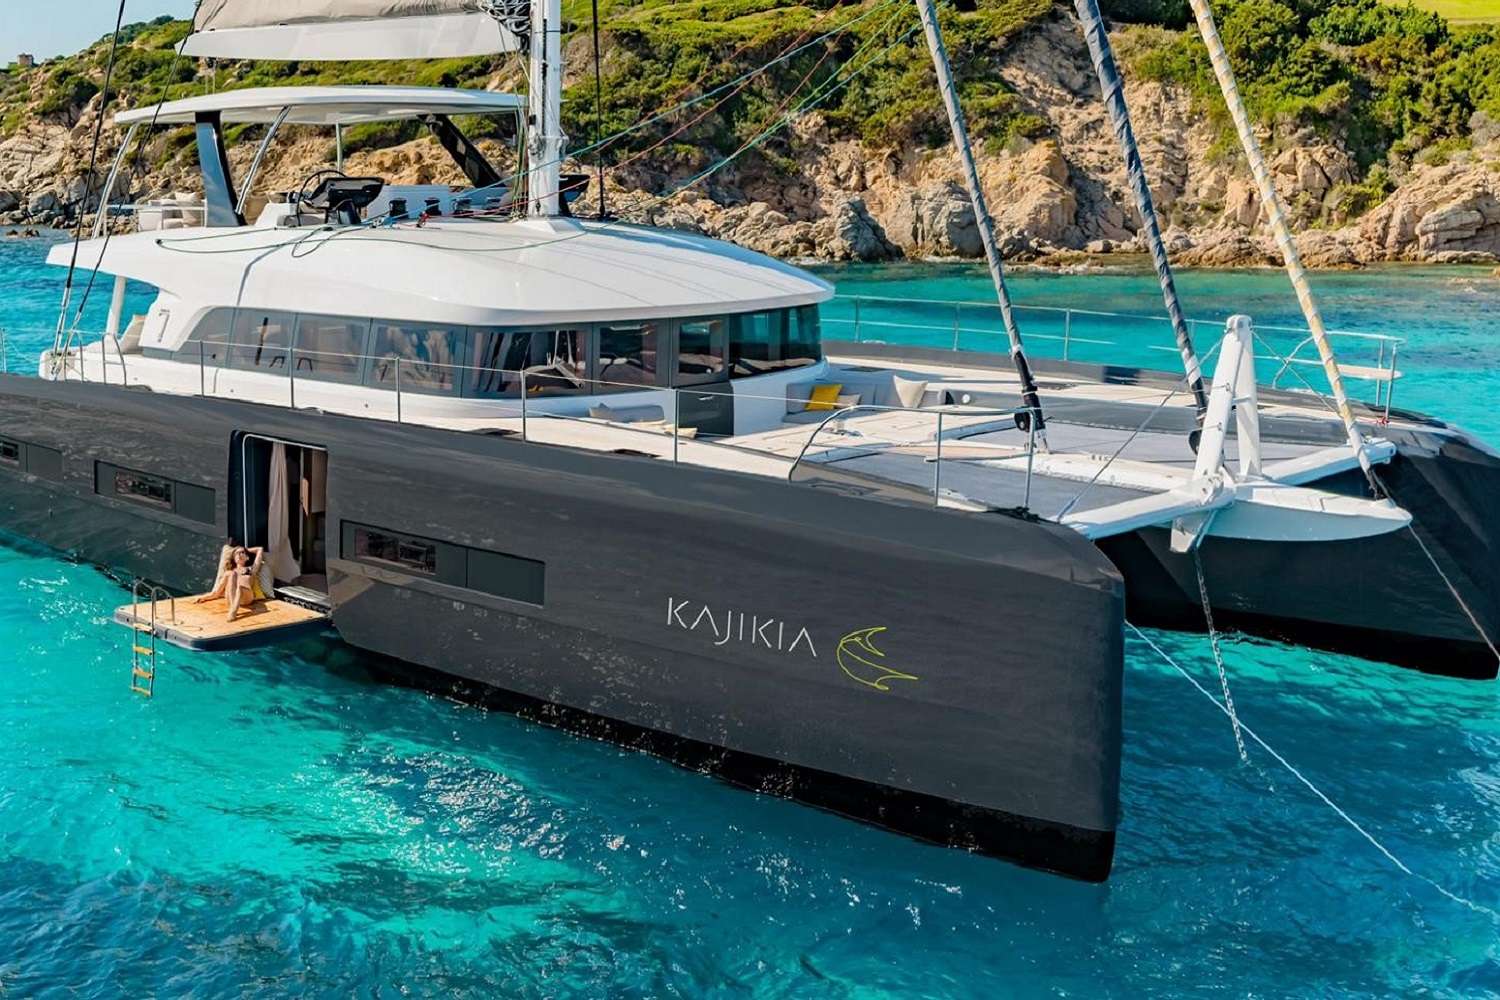 KAJIKIA - Yacht Charter Antalya & Boat hire in W. Med -Naples/Sicily, Greece, W. Med -Riviera/Cors/Sard., Turkey, Croatia | Winter: Caribbean Virgin Islands (US/BVI), Caribbean Leewards, Caribbean Windwards 1